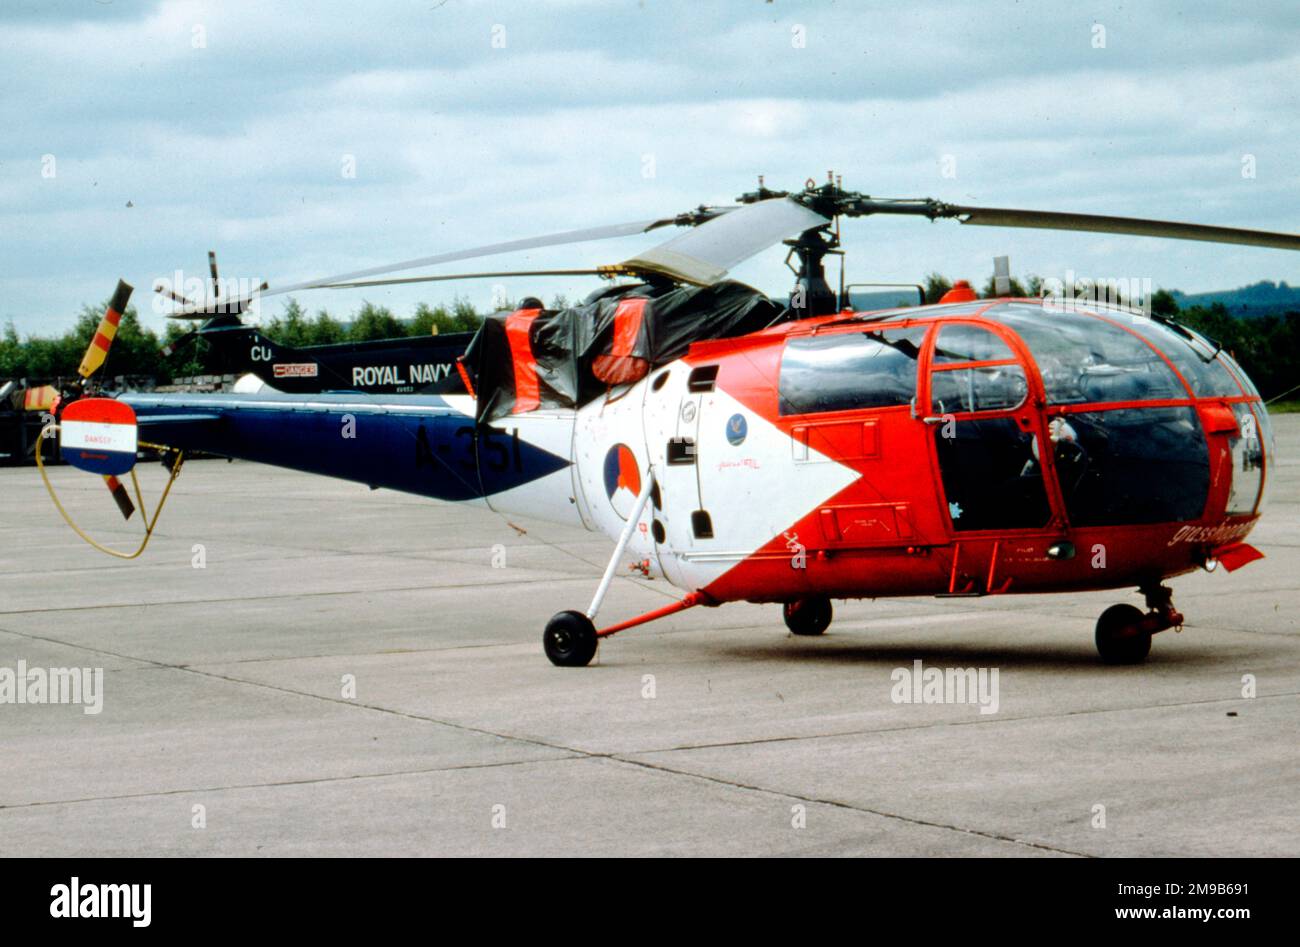 Koninklijke Luchtmacht - Aerospatiale sa.316A Alouette III A-351 (msn 1351), de l'équipe d'exposition d'hélicoptères de sauterelles, à RAF Greenham Common le 27 juin 1981 pour le International Air Tattoo. (Koninklijke Luchtmacht - Royal Netherlands Air Force) Banque D'Images